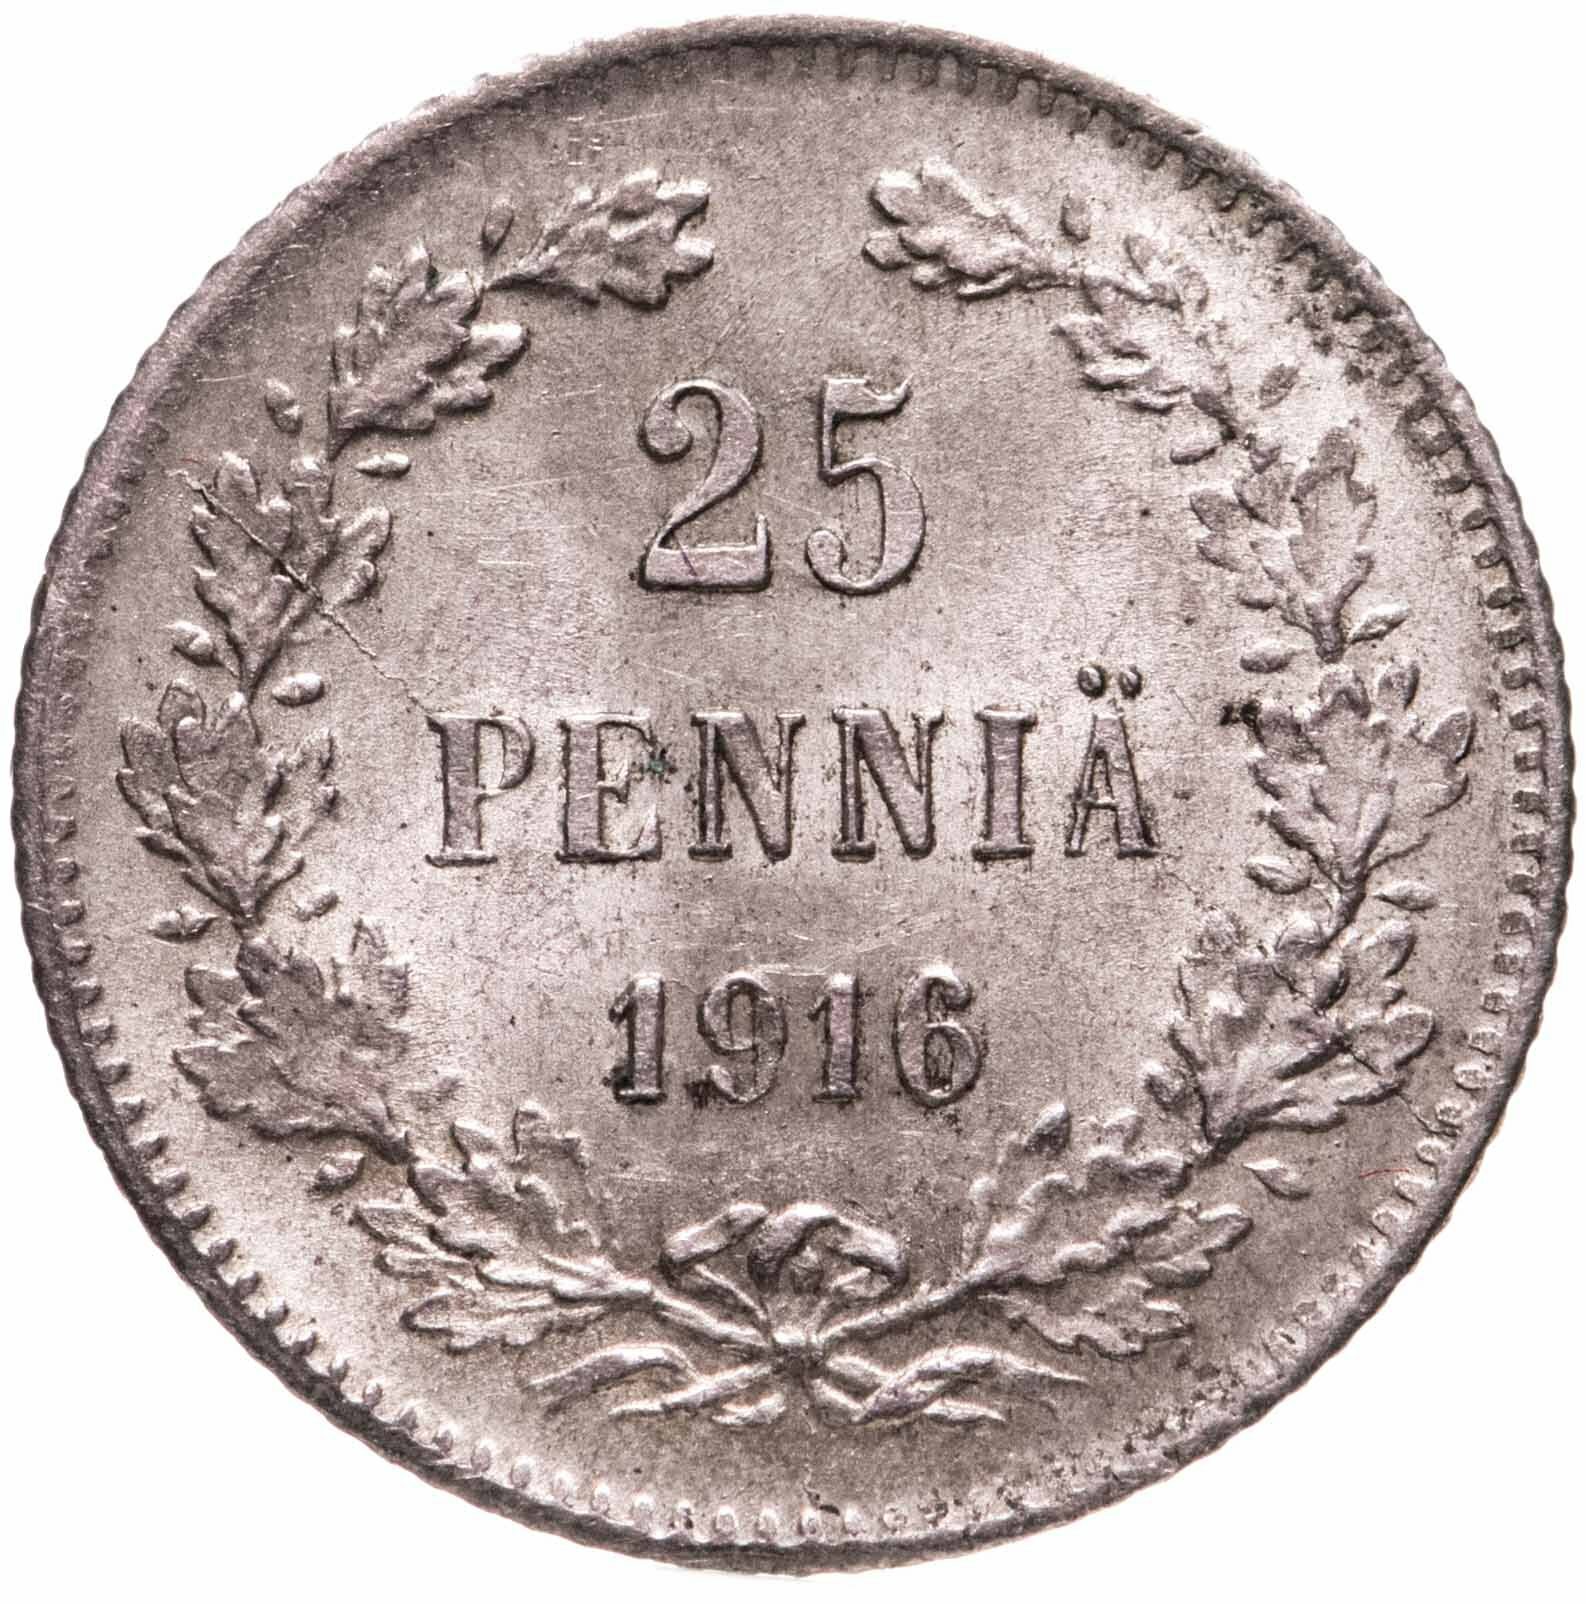 25 пенни (pennia) 1916 S расколы штемпеля, Российская Финляндия - фотография № 1